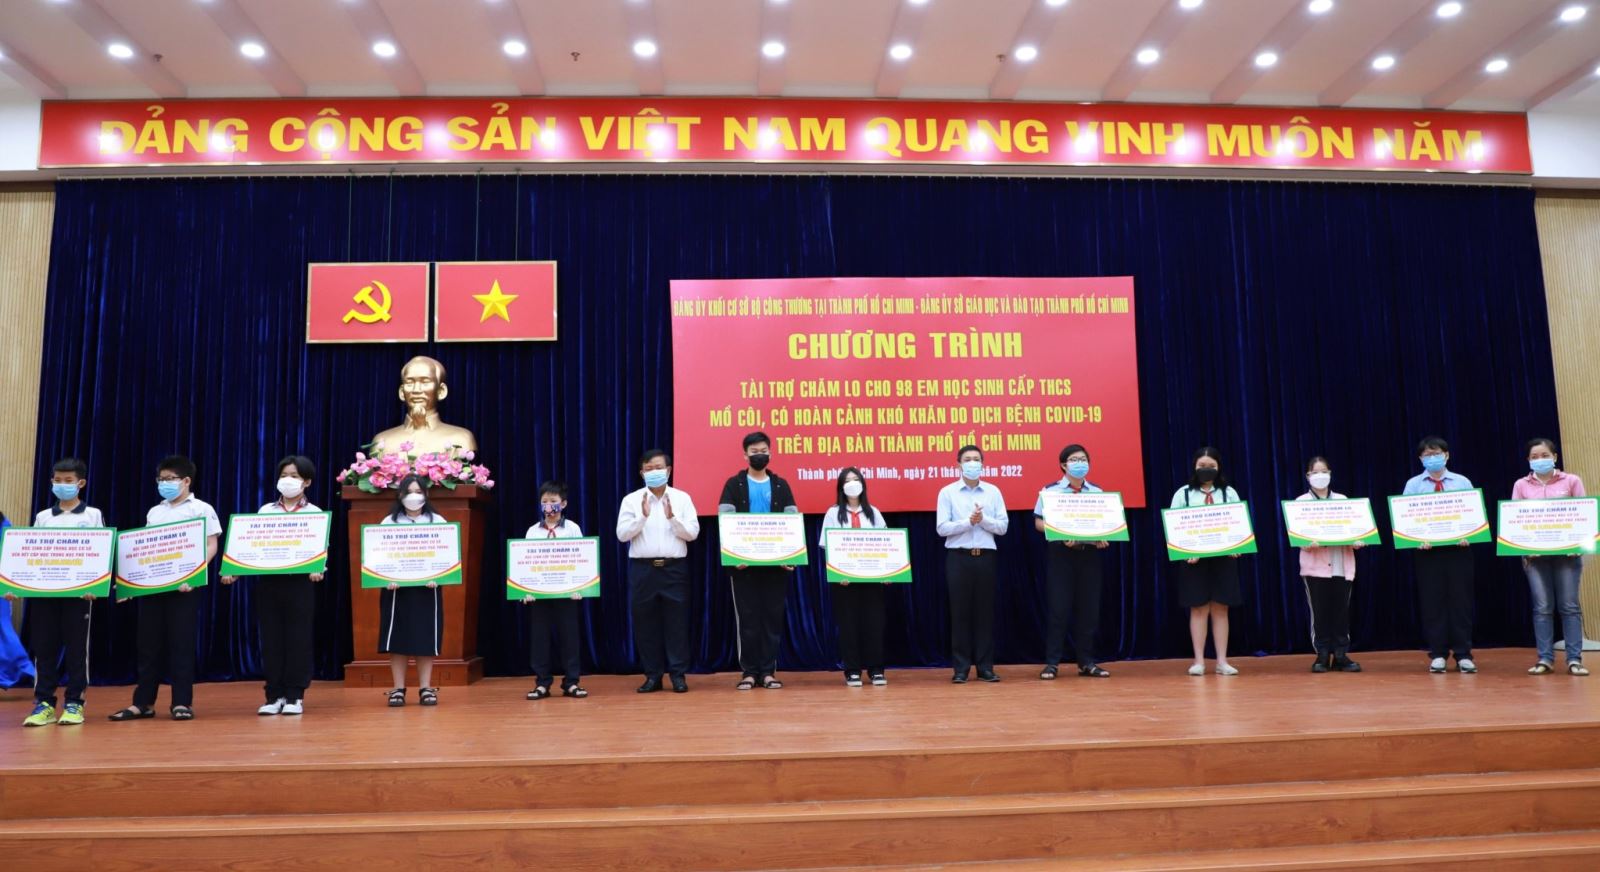 Ông Trần Xuân Điền -  Bí thư Đảng ủy Khối cơ sở Bộ Công thương tại TP.HCM và ông Trương Quốc Phúc - Thành viên HĐQT EVNGENCO3 trao bảng tài trợ cho các em học sinh